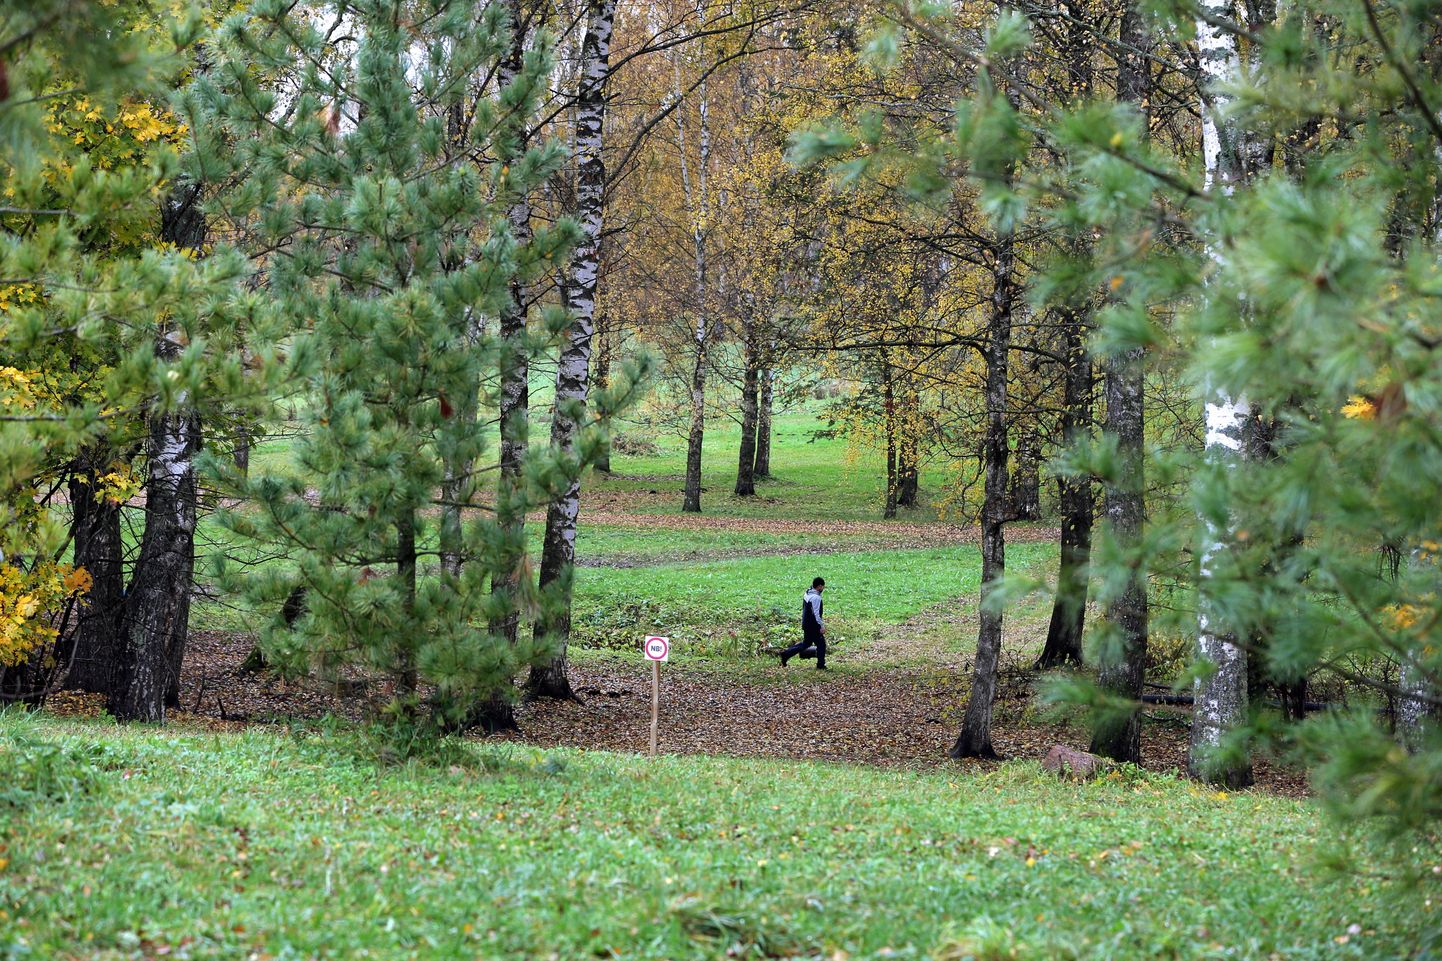 Tähtvere dendropargis mängitakse kuival ajal taldrikugolfi ja käiakse jooksmas. Talvel kulgevad seal suusarajad.